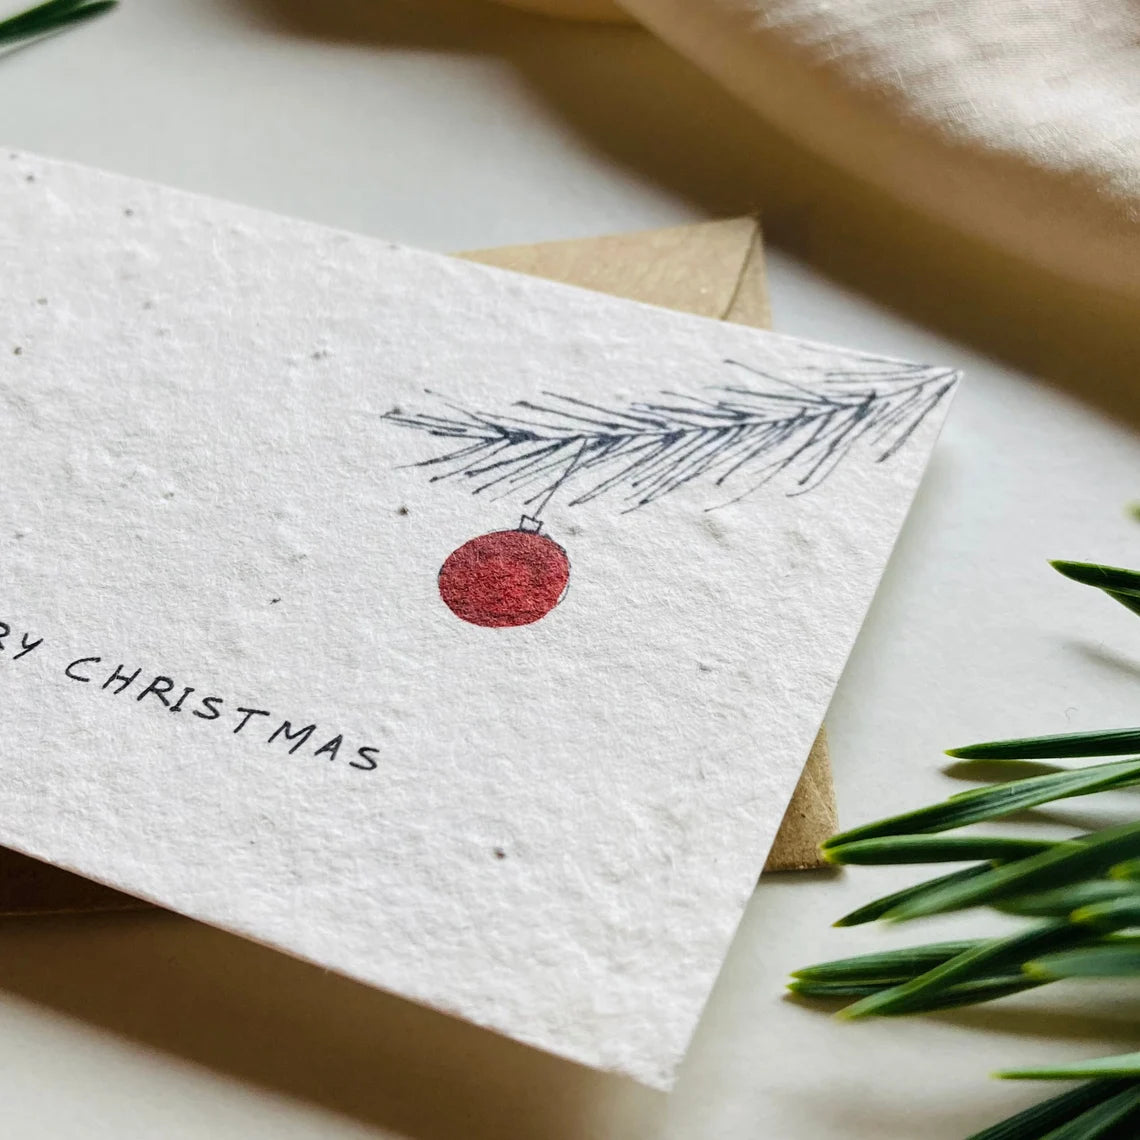 Einpflanzbare Karte aus handgemachtem Saatpapier | Merry Christmas